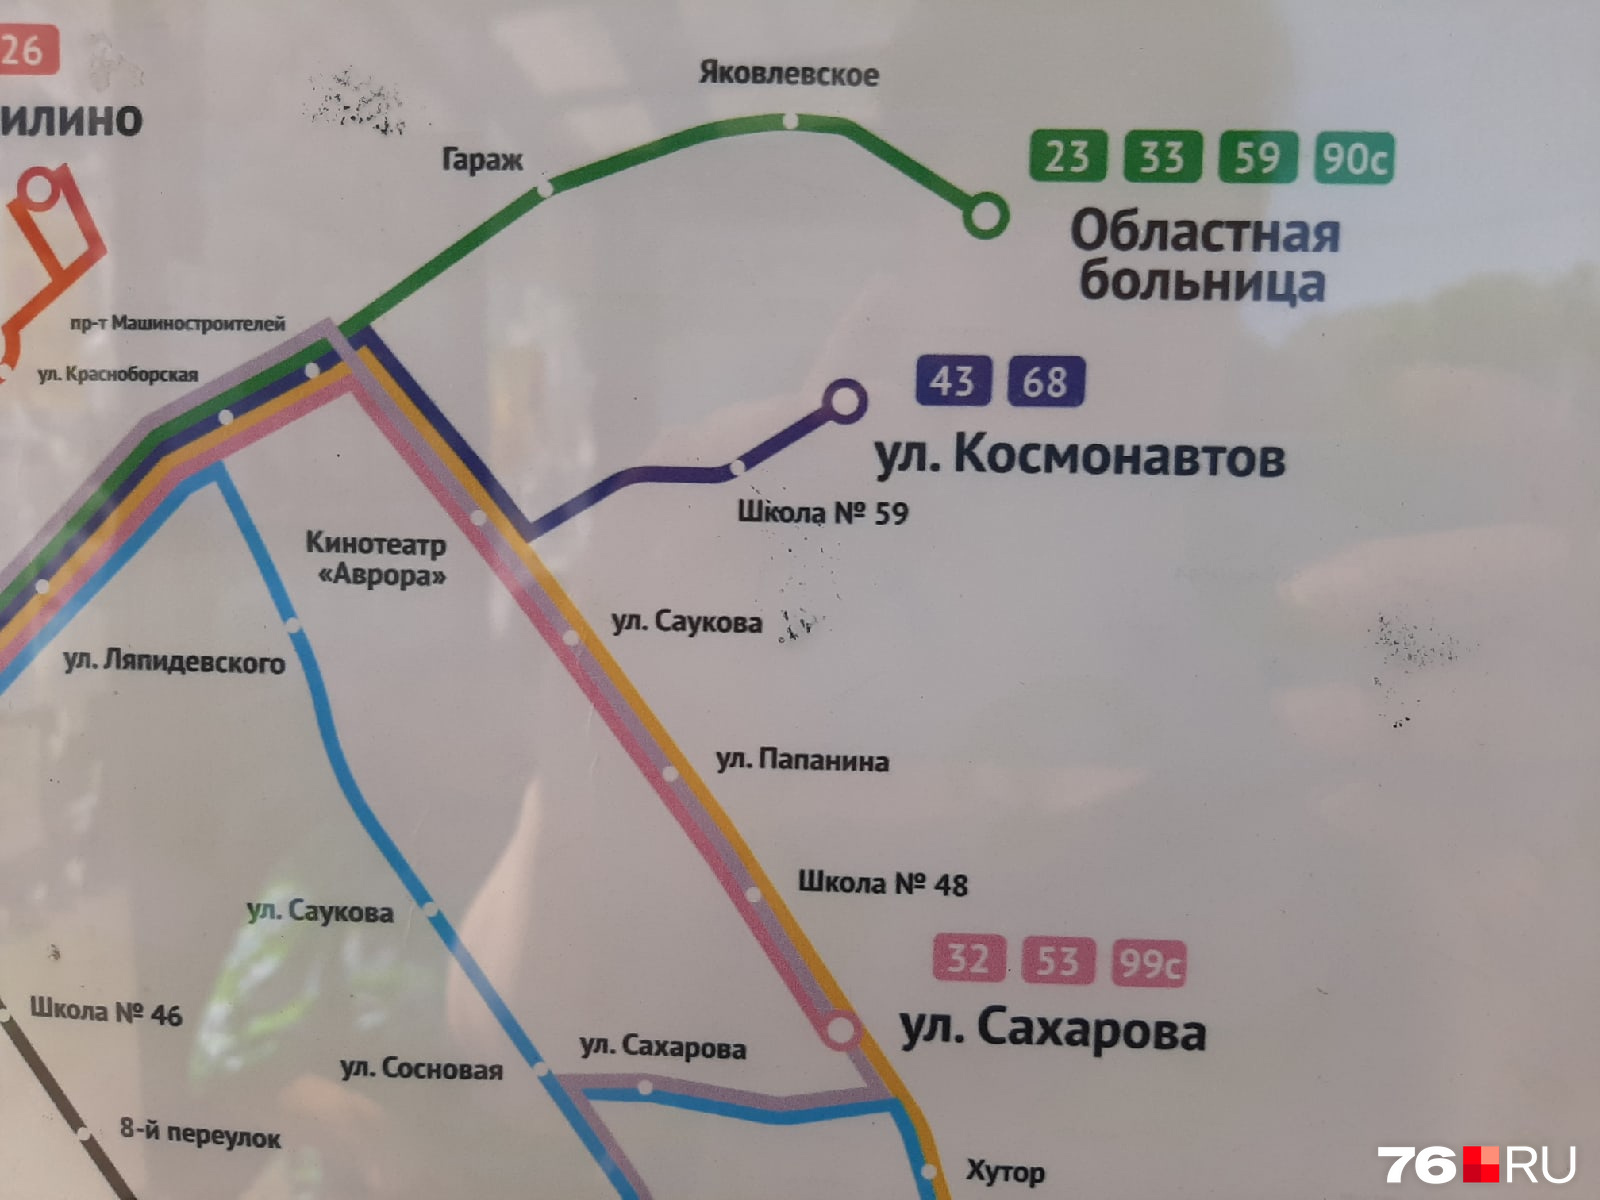 На карте обозначены маршруты автобусов, которые идут через остановку, где находится человек